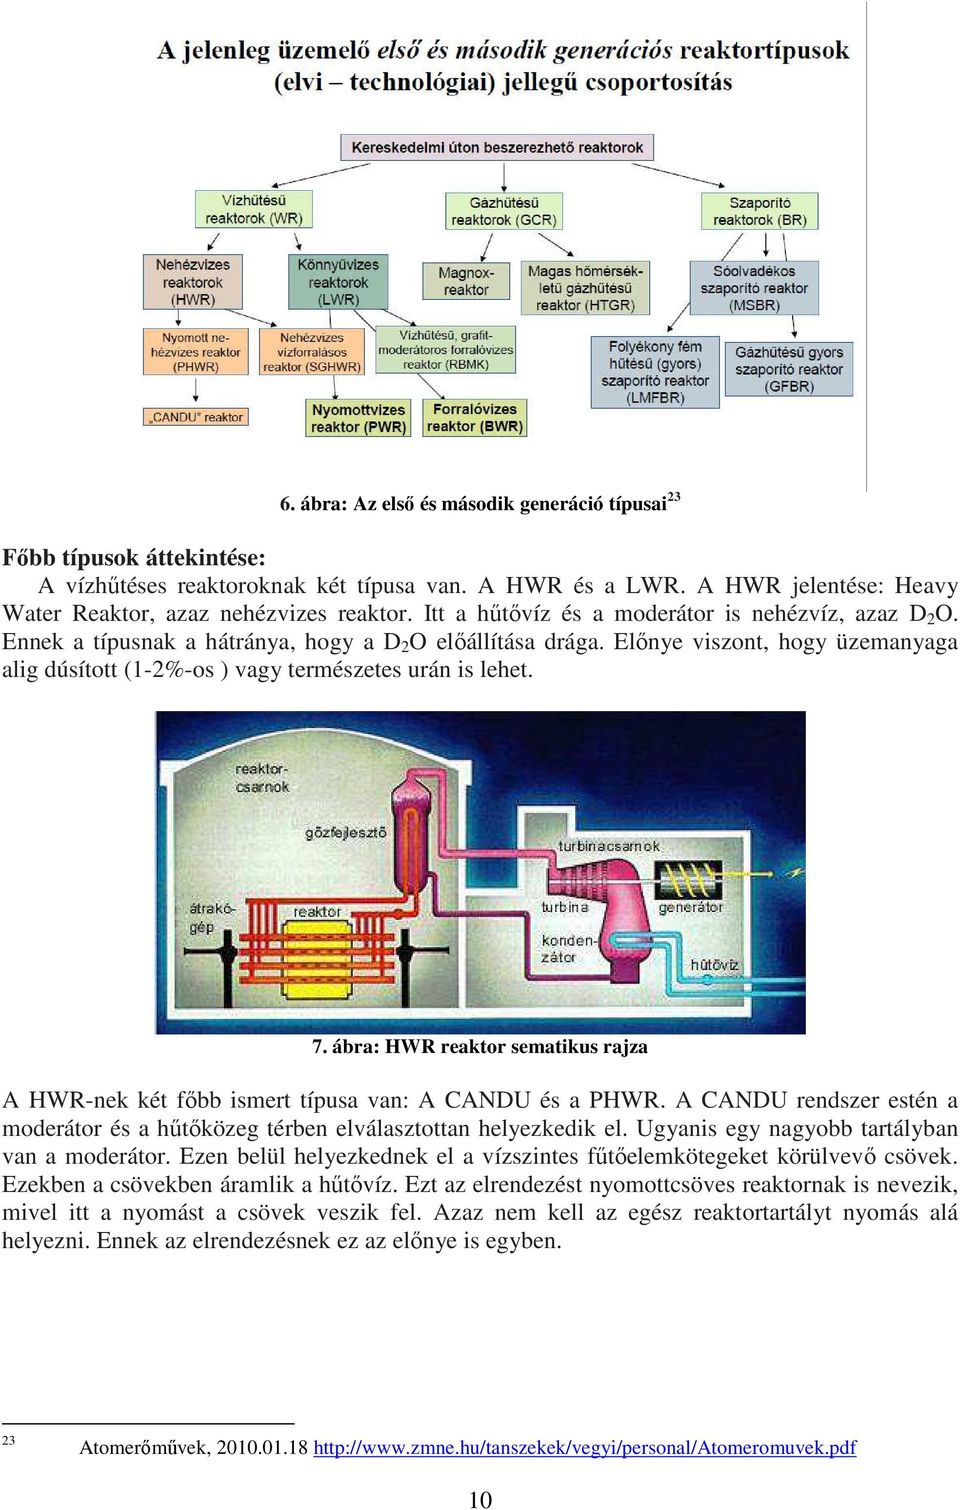 Előnye viszont, hogy üzemanyaga alig dúsított (1-2%-os ) vagy természetes urán is lehet. 7. ábra: HWR reaktor sematikus rajza A HWR-nek két főbb ismert típusa van: A CANDU és a PHWR.